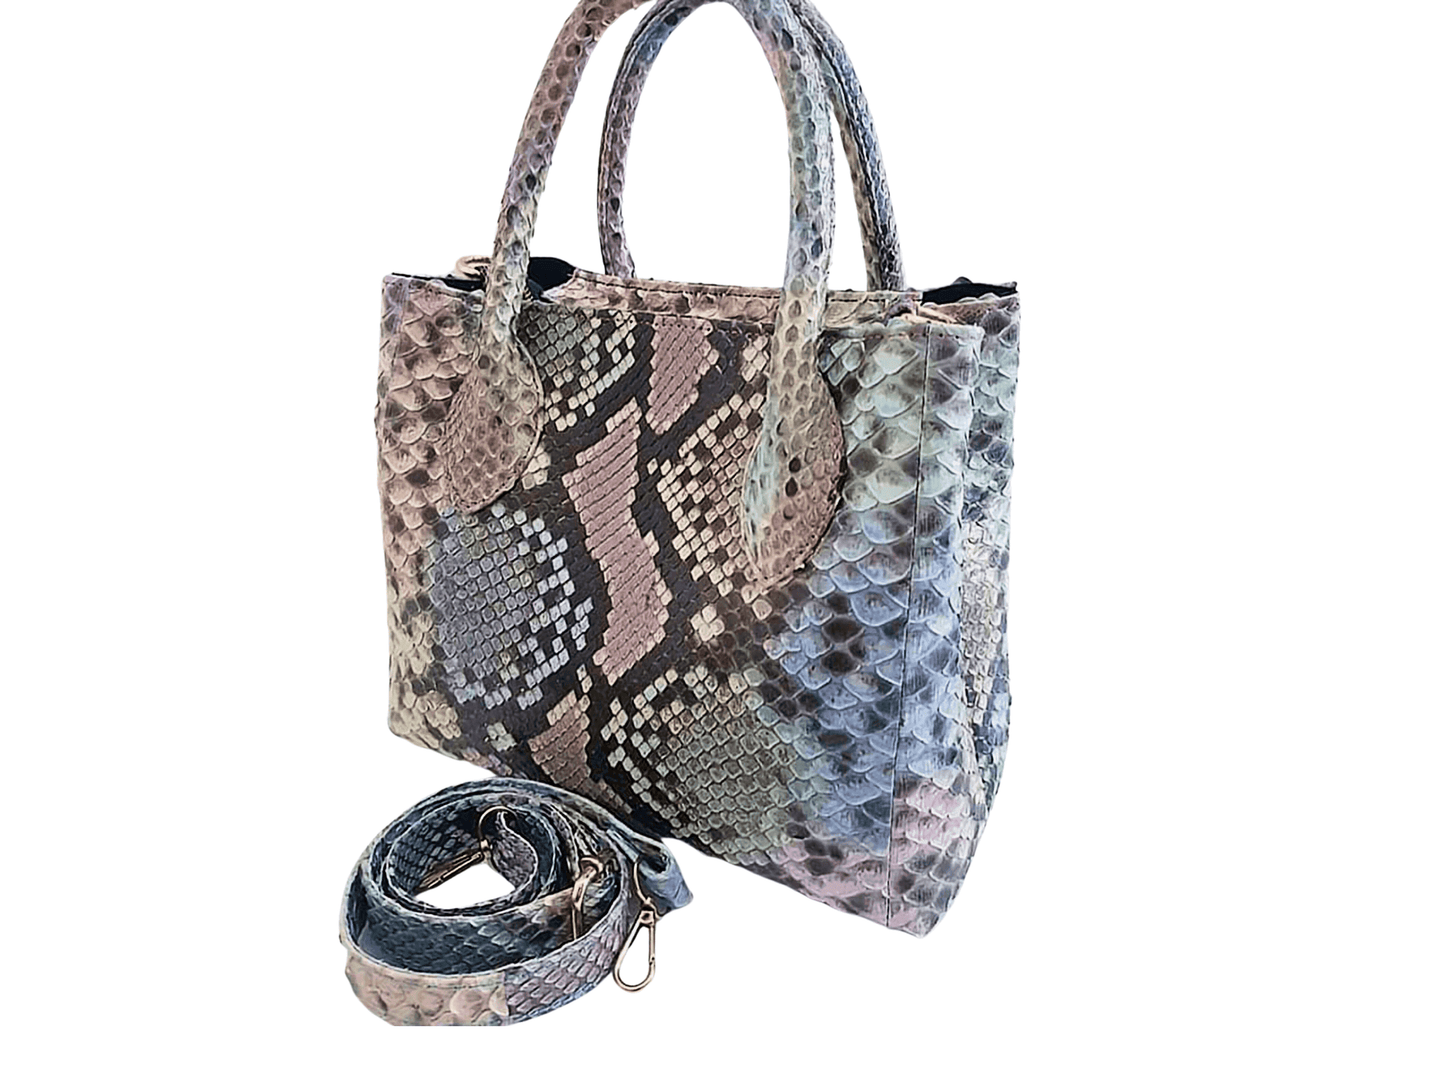 Tote Snakeskin Shoulder Bag Multi Color Two Python Jacket by LFM Fashion